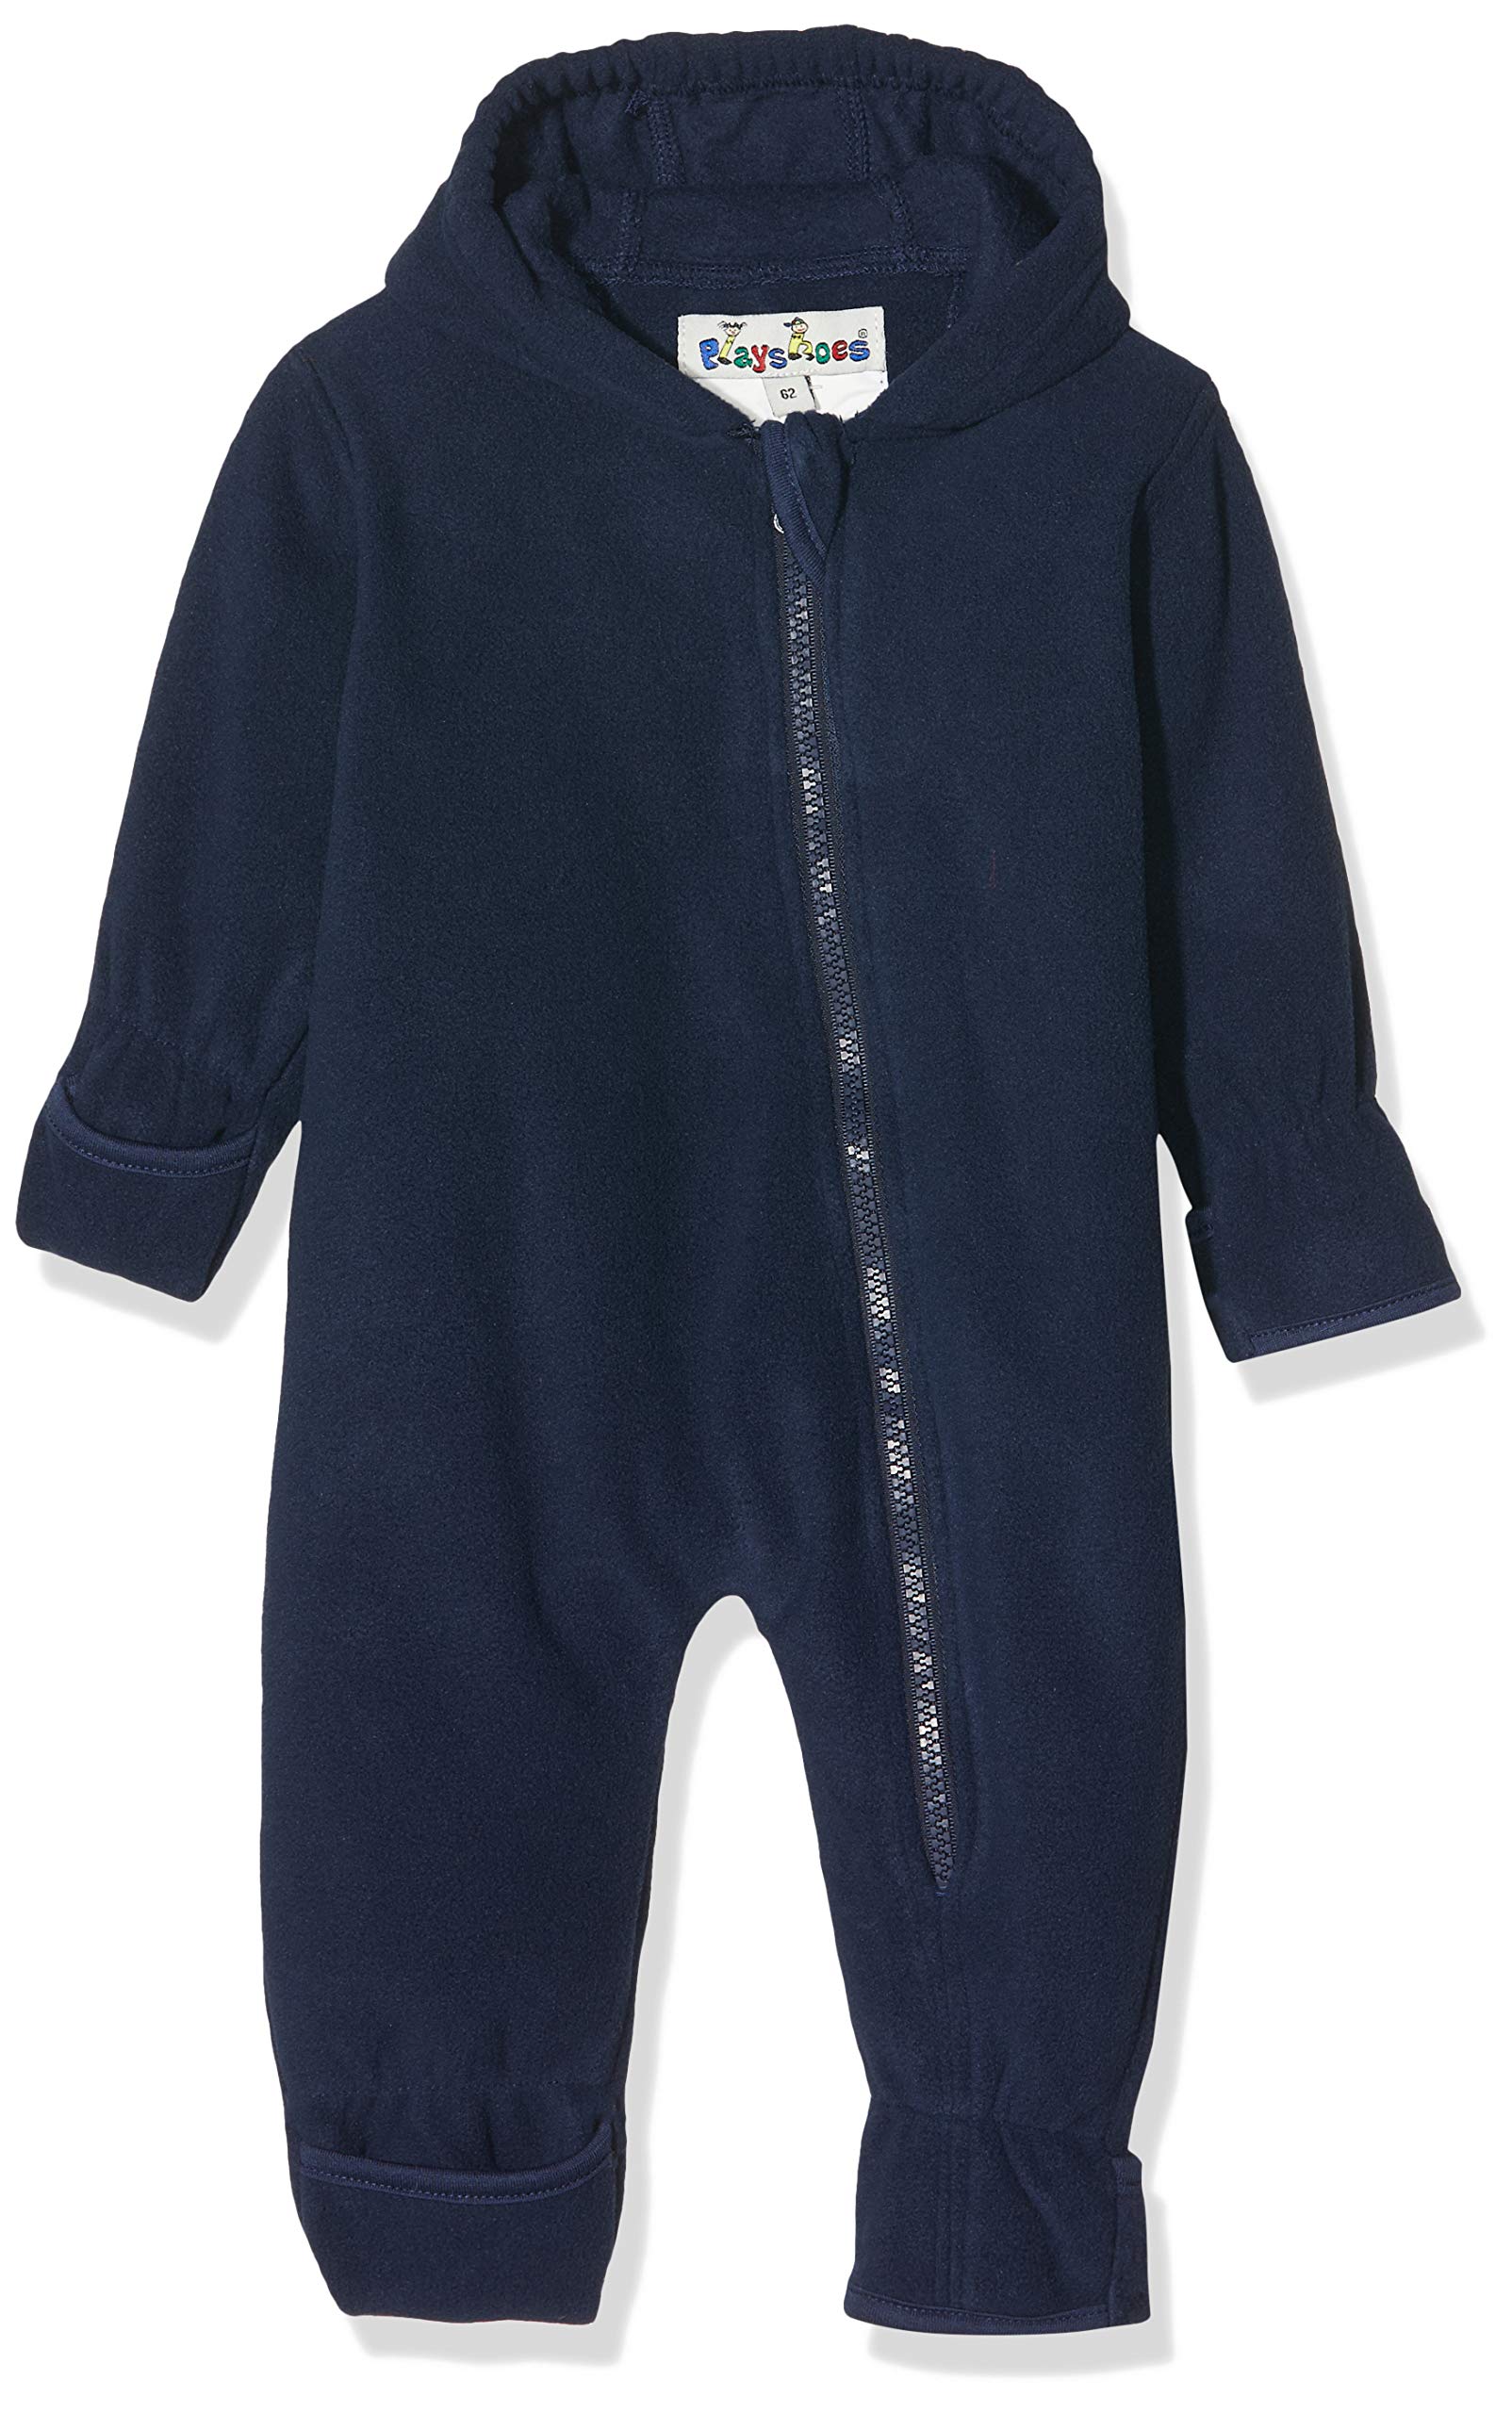 Playshoes Unisex Kinder Fleece-Overall Jumpsuit, dunkelblau, 68